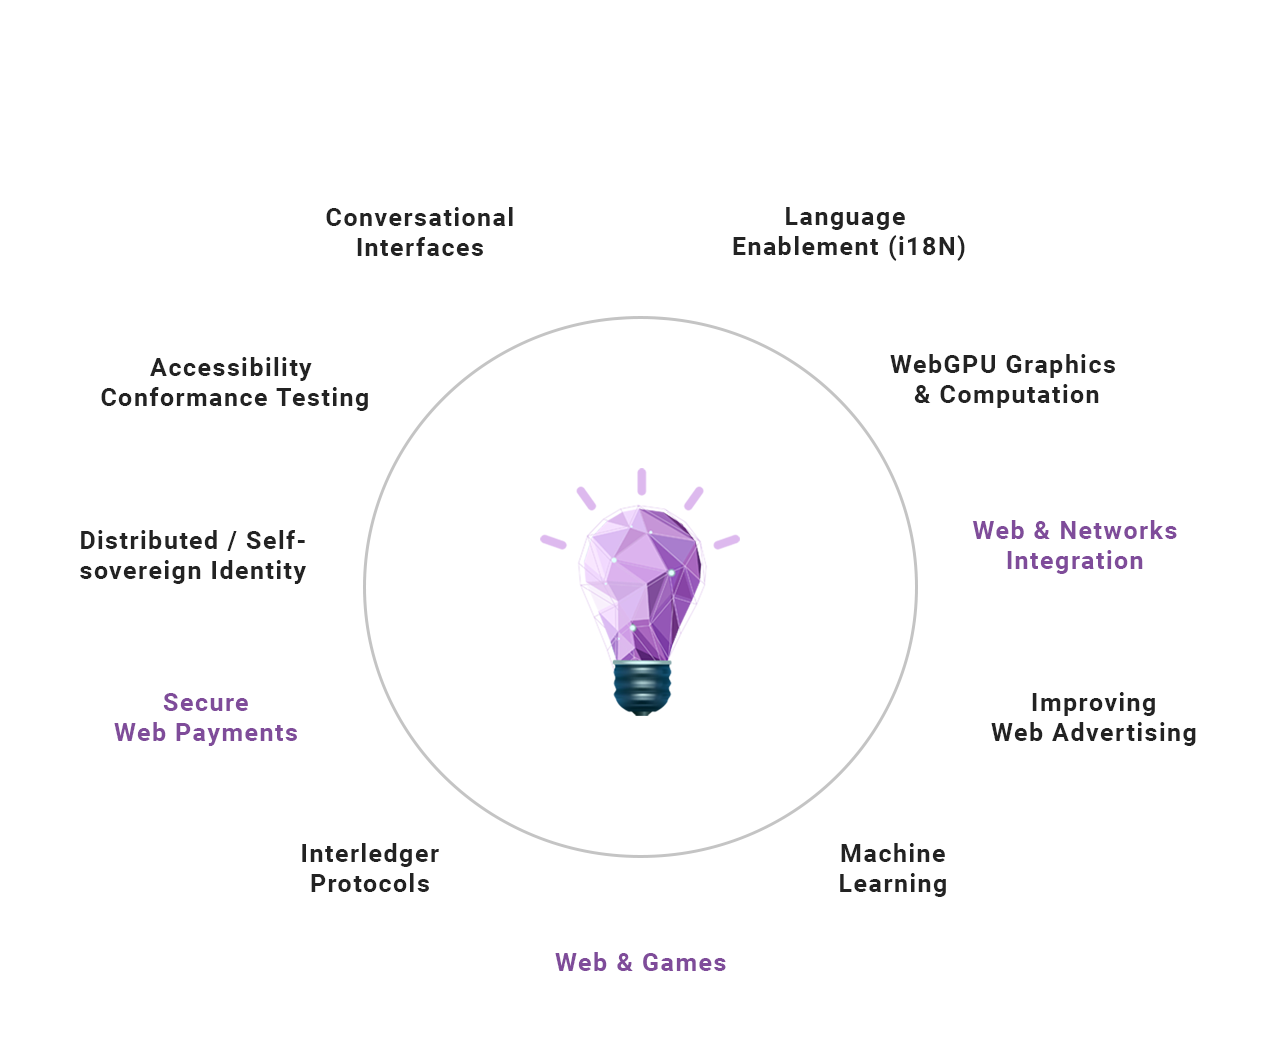 Pipeline of innovation for the Web [Lightbulb design credit: Freepik]